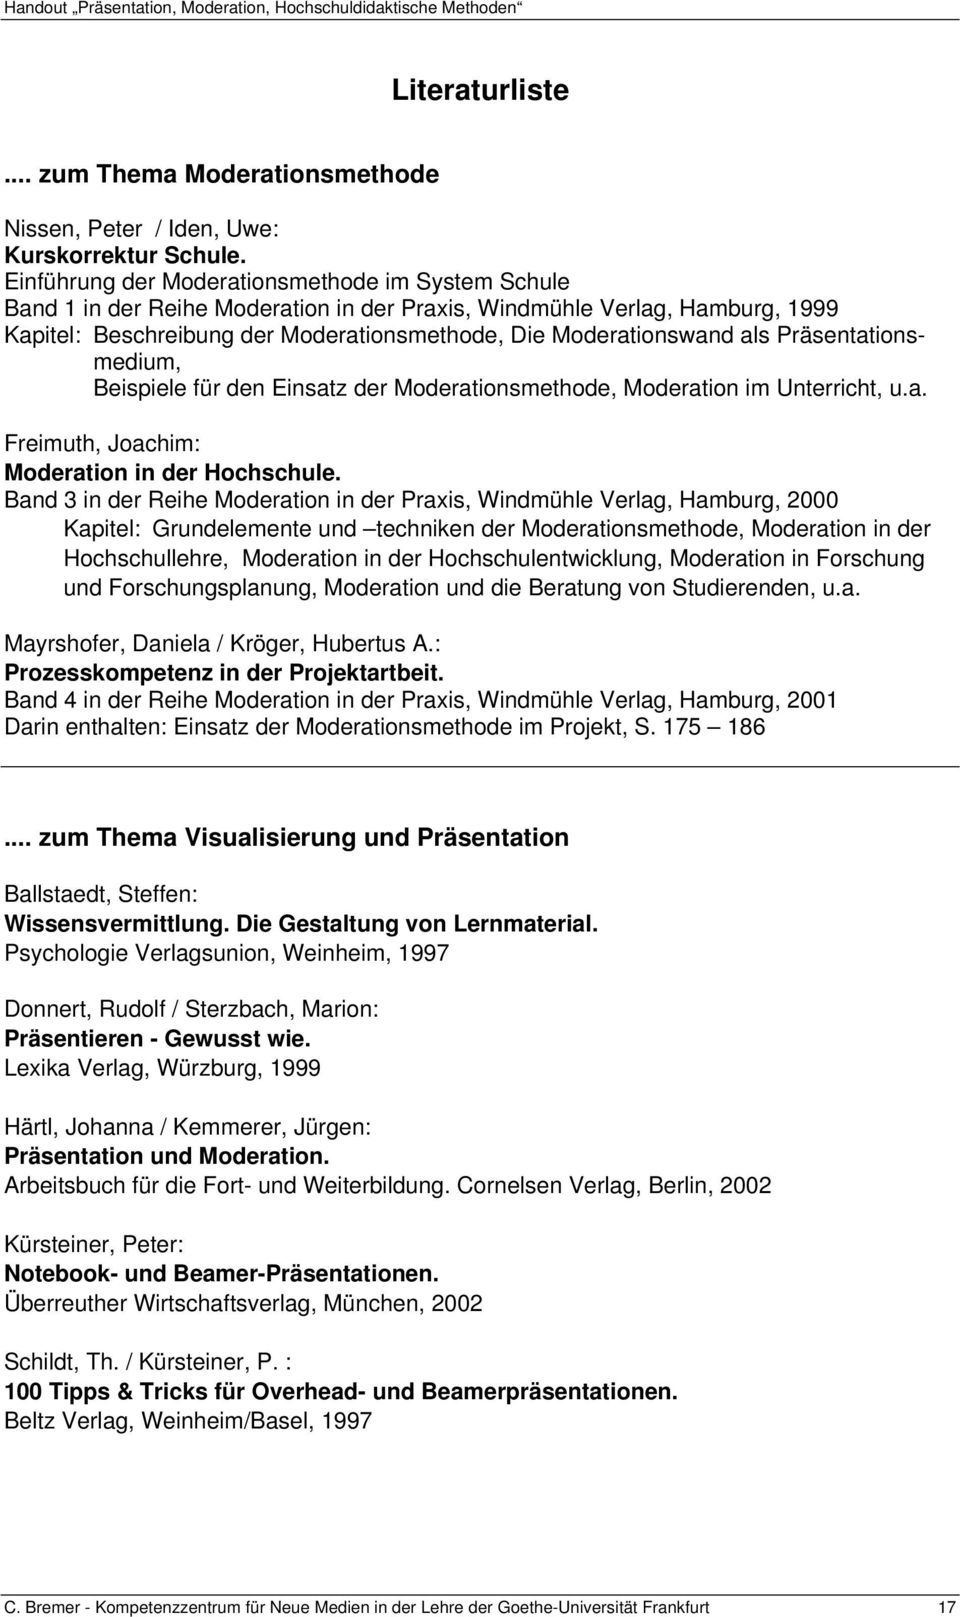 Präsentationsmedium, Beispiele für den Einsatz der Moderationsmethode, Moderation im Unterricht, u.a. Freimuth, Joachim: Moderation in der Hochschule.